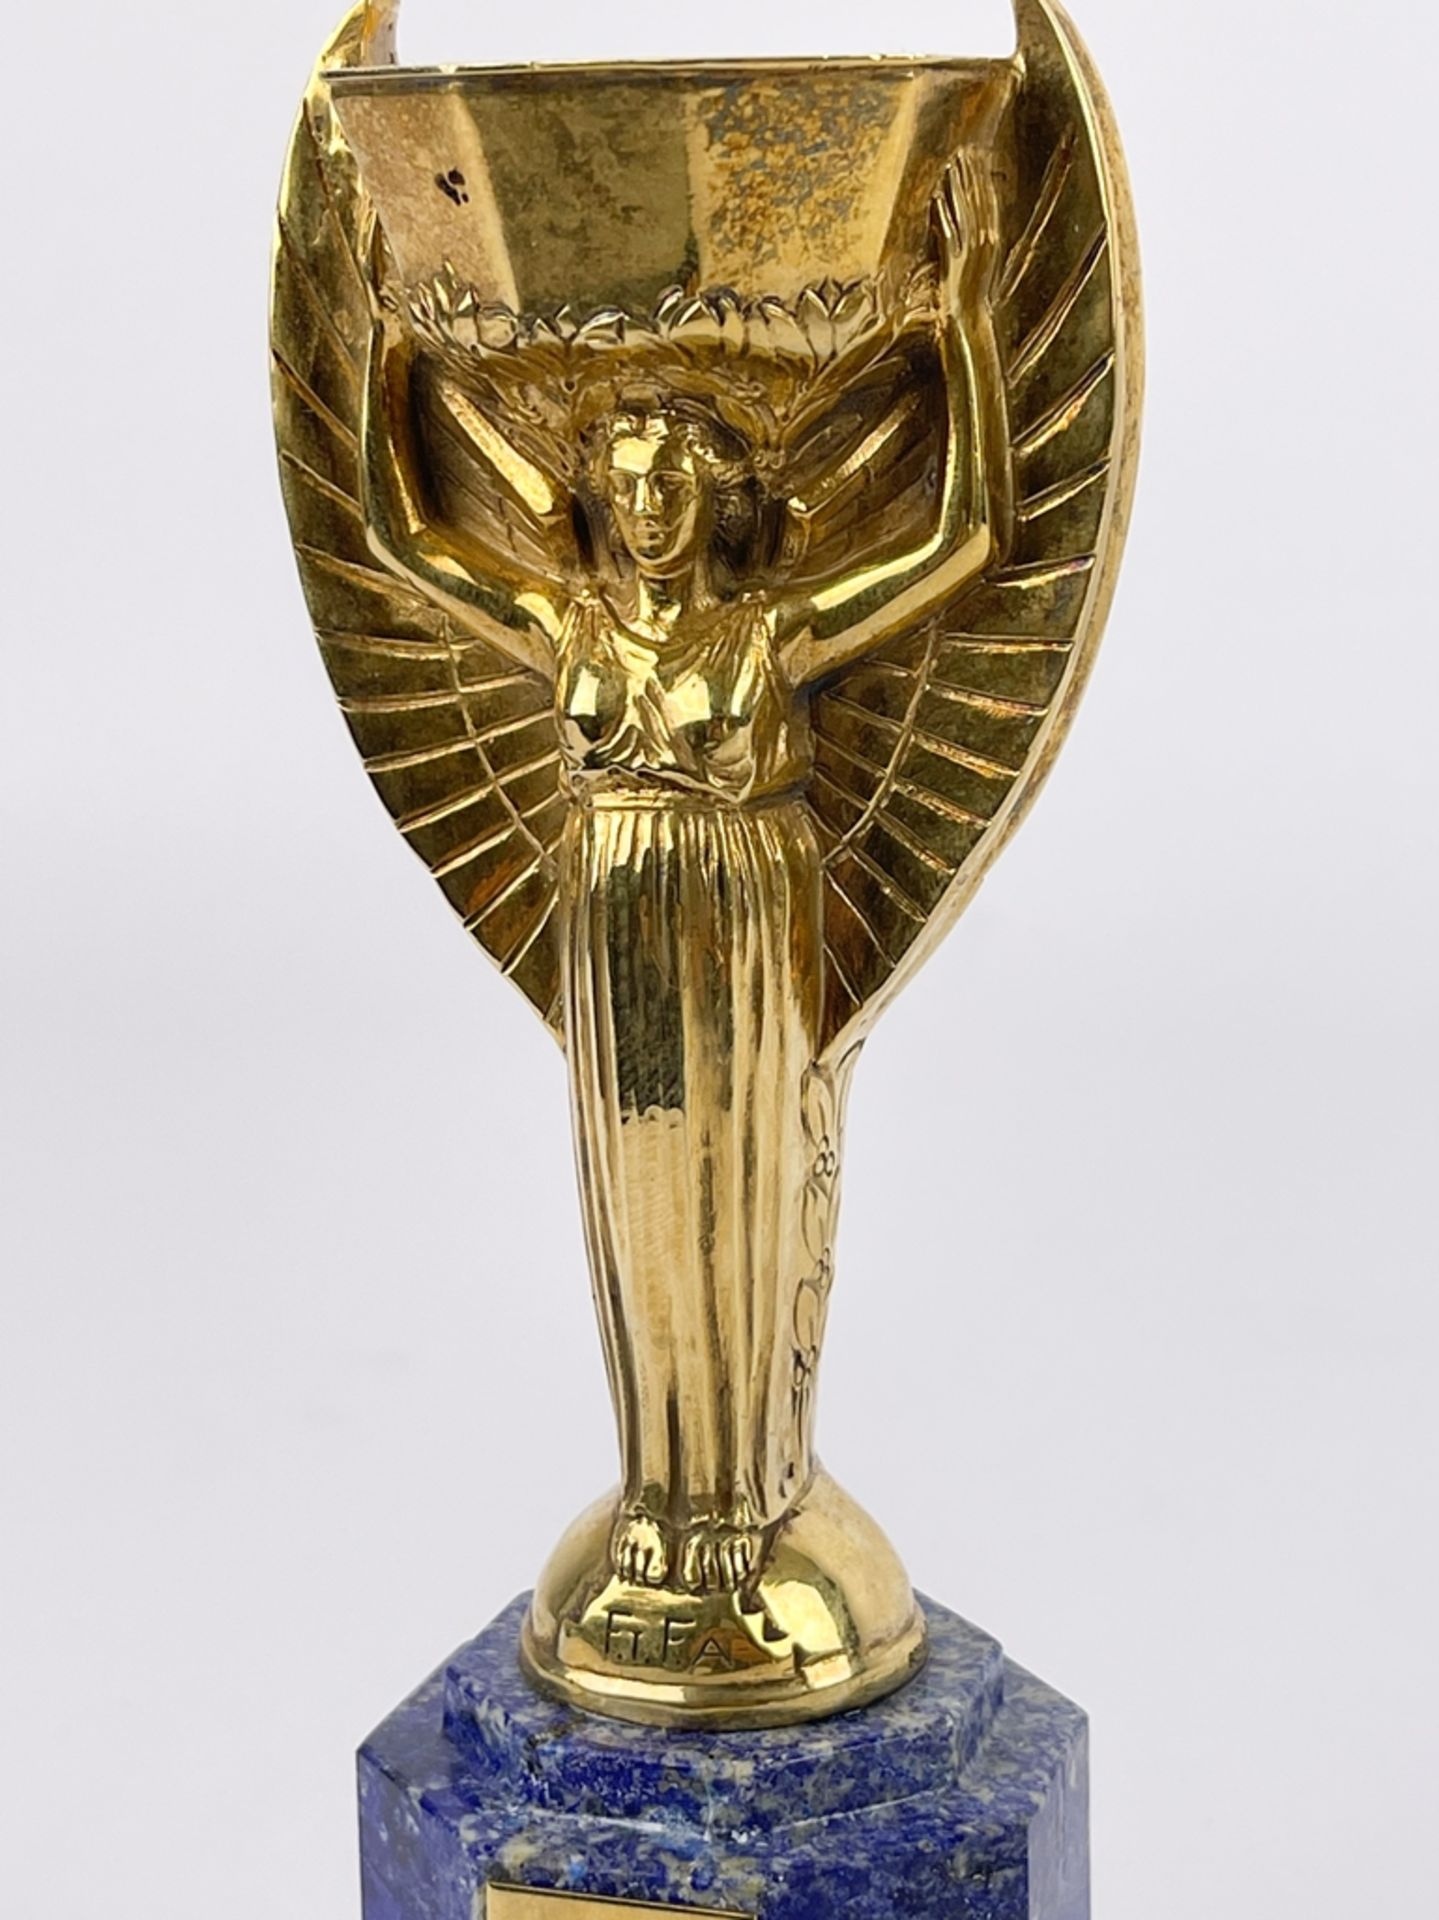 Coupe du Monde de Football Association "Jules Rimet" - Image 3 of 12